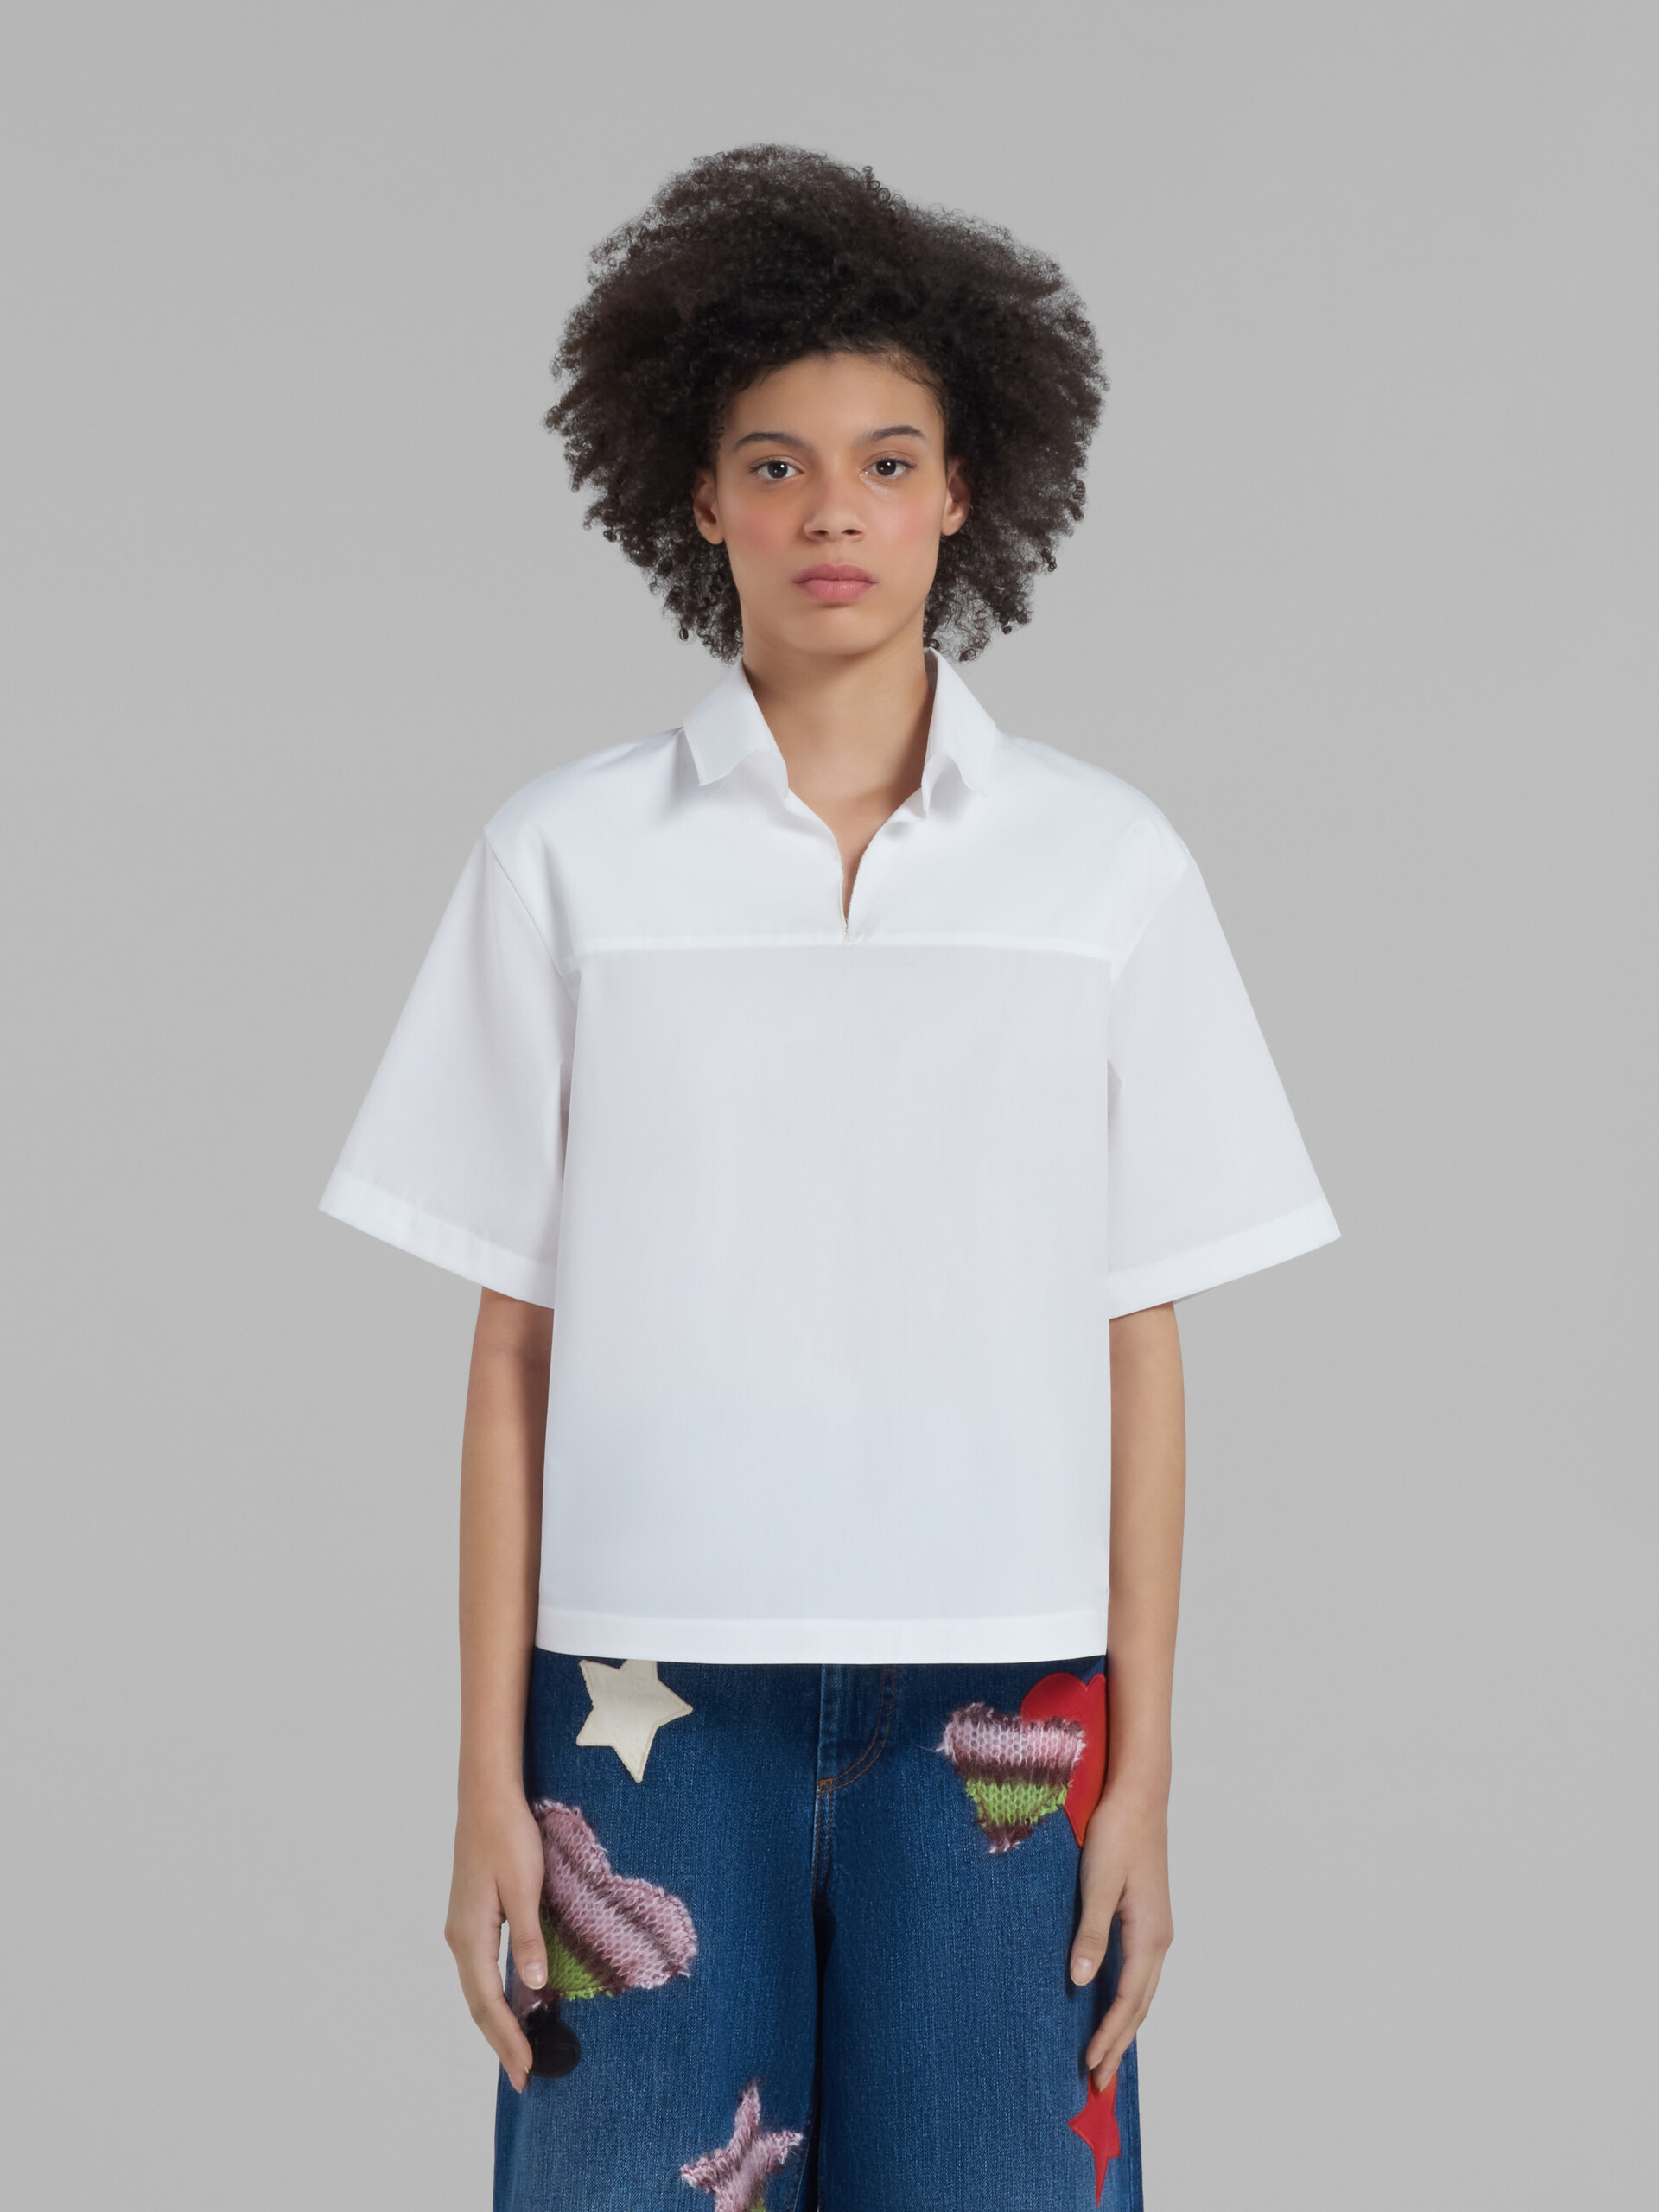 Blouse en popeline biologique blanche avec arrière polo - Chemises - Image 2